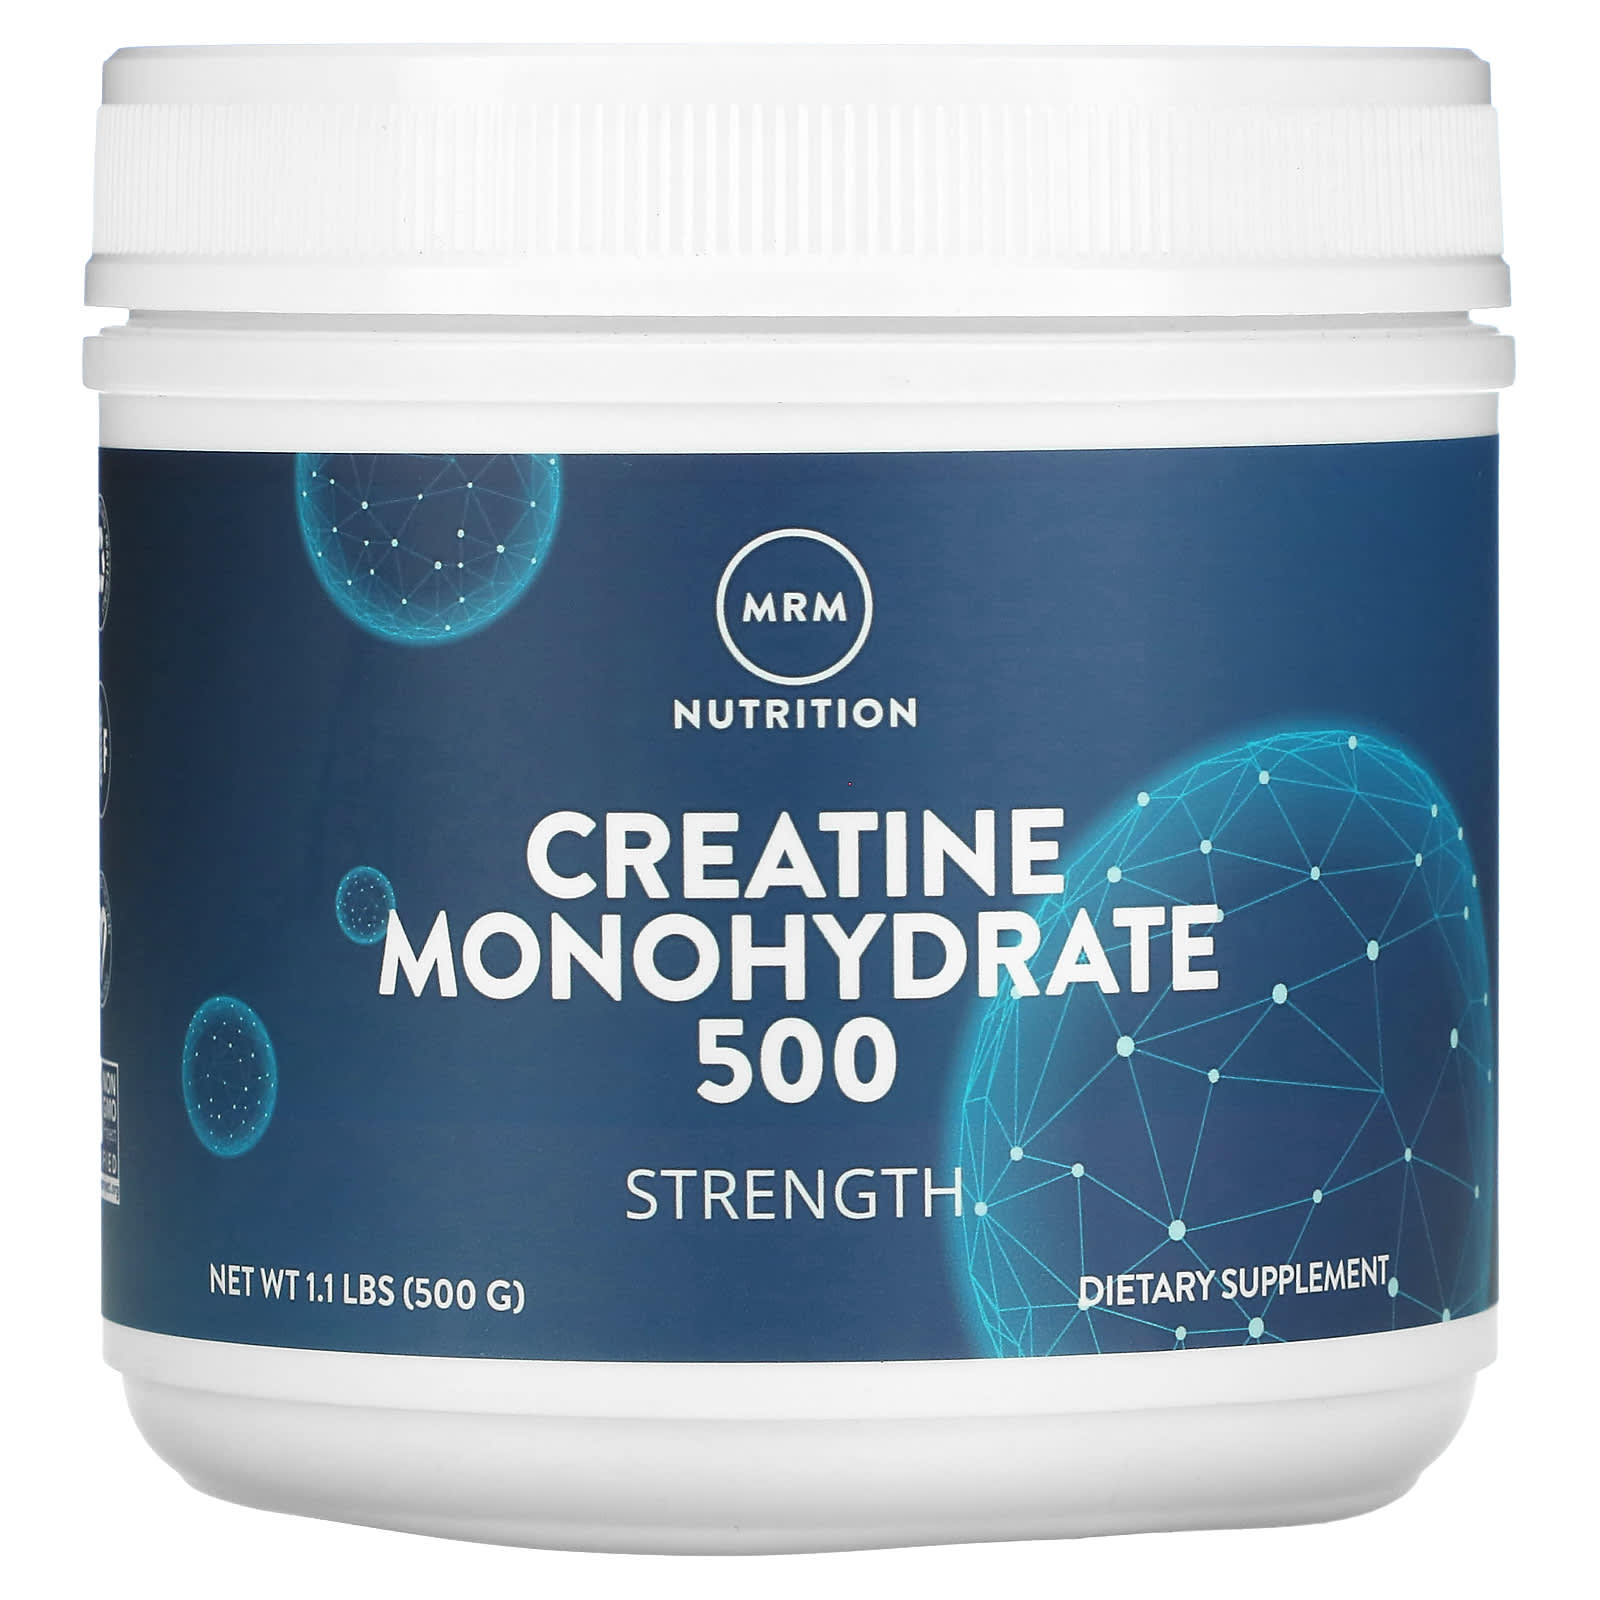 Моногидрат Креатина 500 MRM Nutrition, 500 г rsp nutrition порошок моногидрата креатина 5 г 500 г 17 6 унции